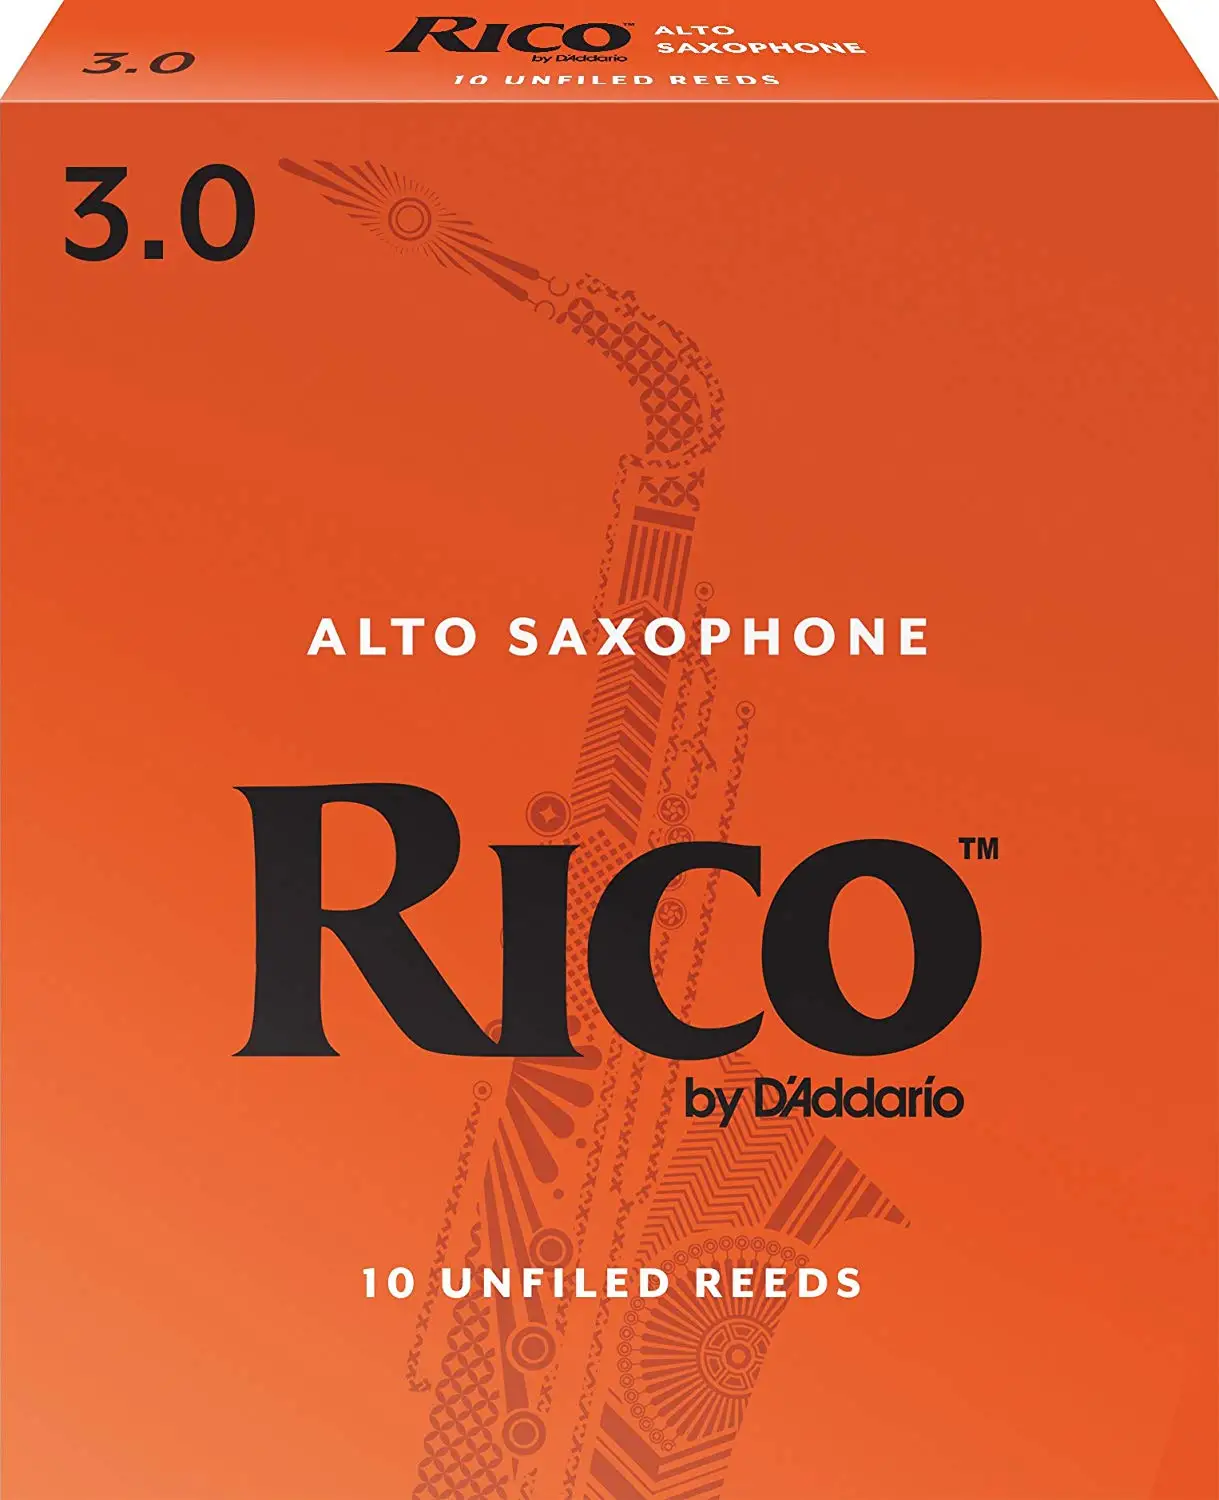 Рико D'Addario саксофон тростника, прочность 2,0/2,5/3,0/3,5, 10 шт или 1-pack, купить 3 или больше, получить модернизированные вакуумные-печать - Цвет: 3.0 10 pieces set